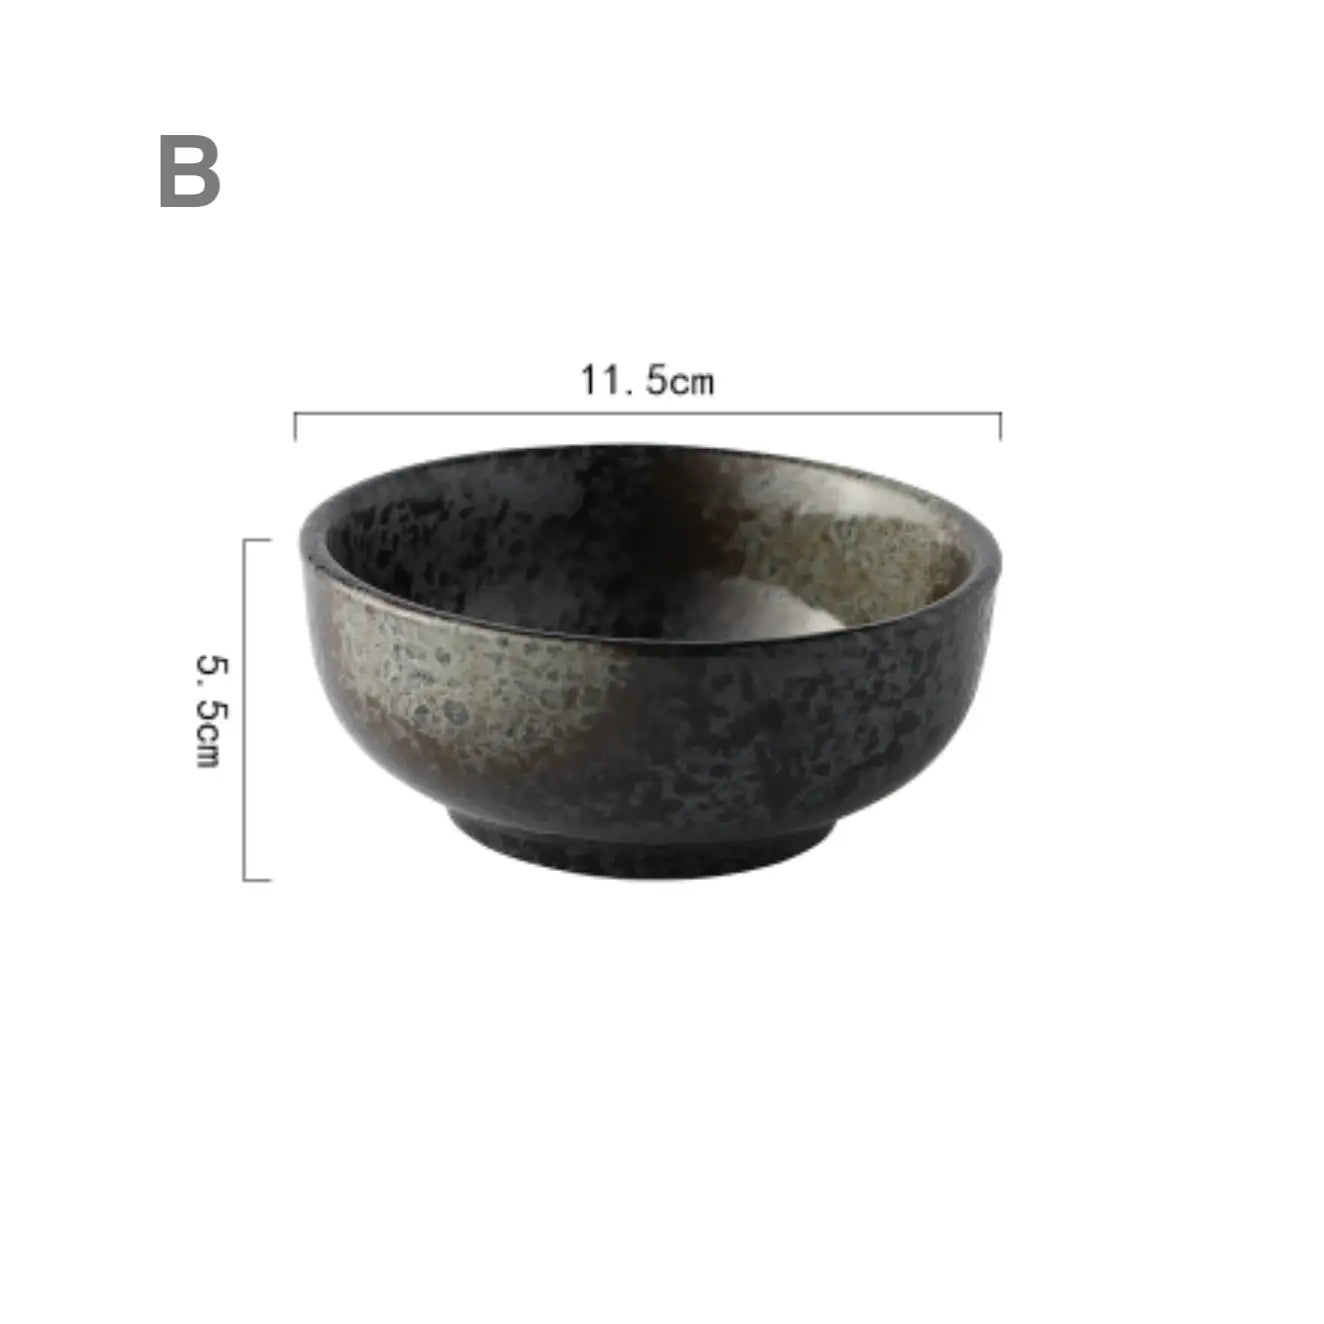 Japanese Style Bowl